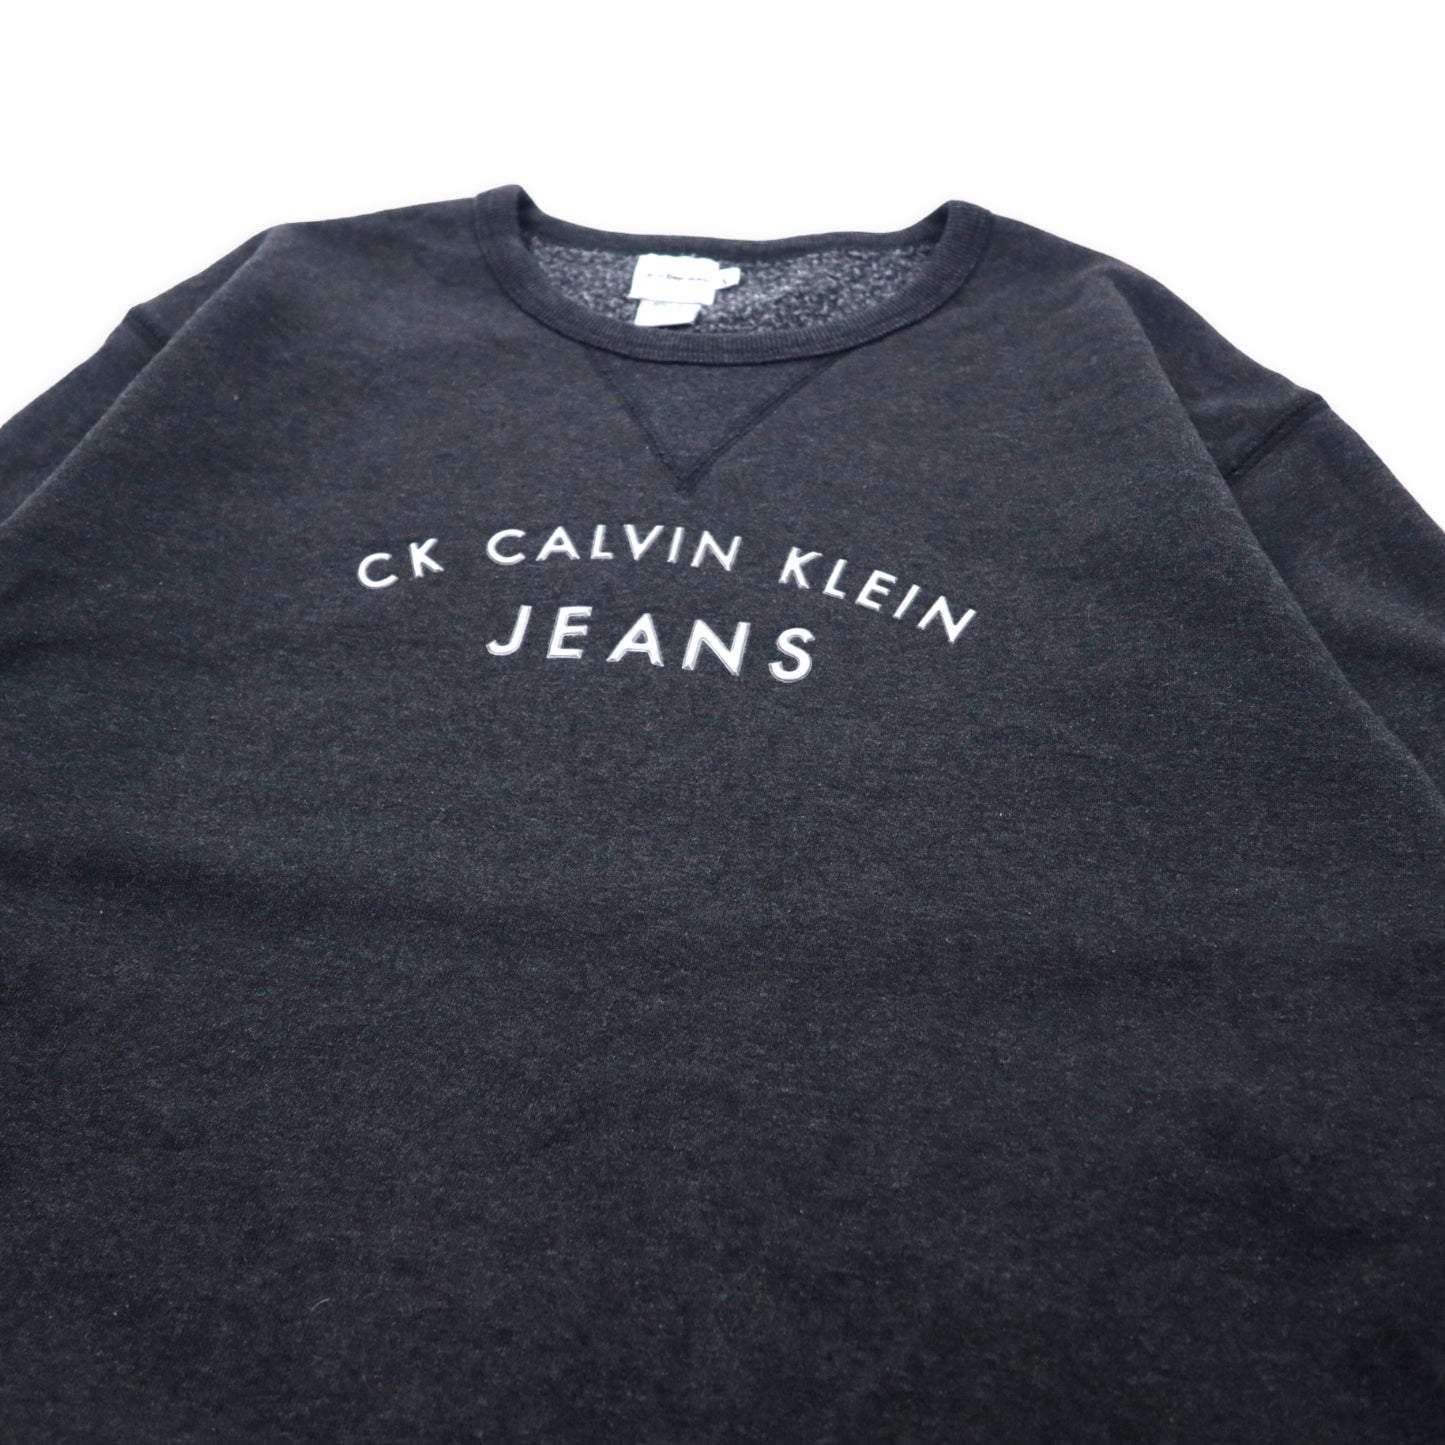 Calvin Klein Jeans 90年代 フロントロゴ スウェット M グレー コットン 裏起毛 前V メキシコ製